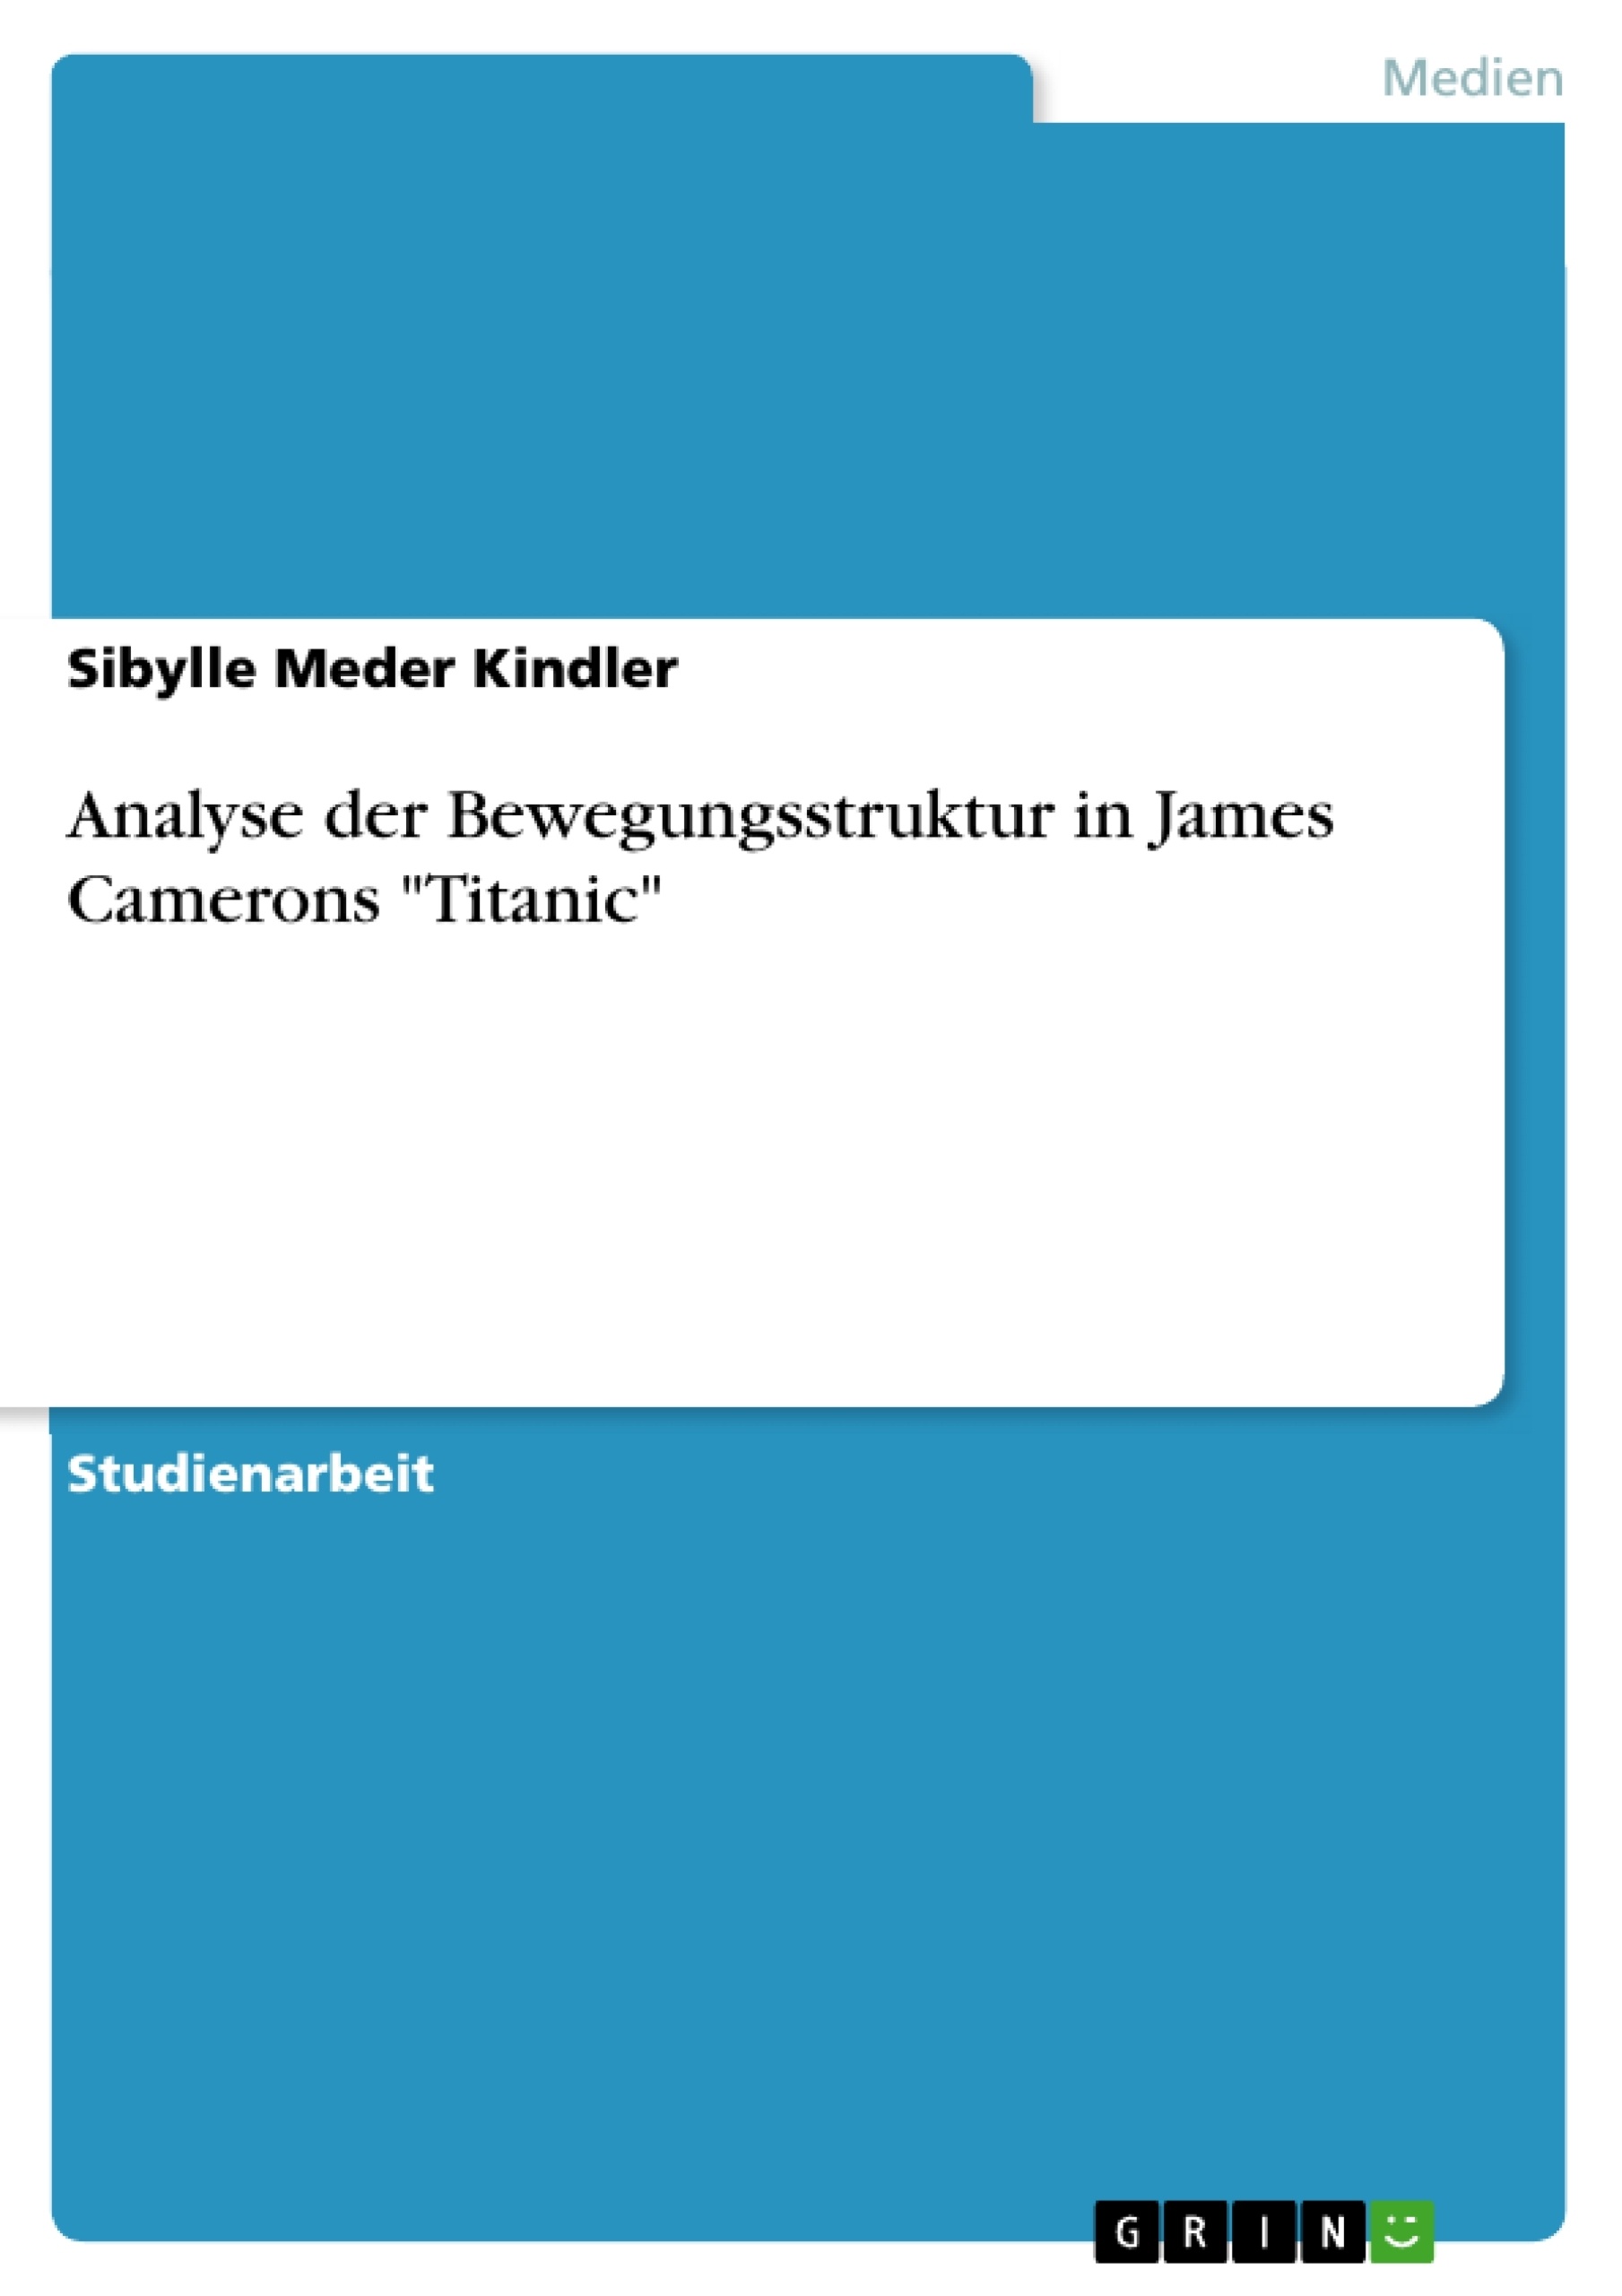 Title: Analyse der Bewegungsstruktur in James Camerons "Titanic"